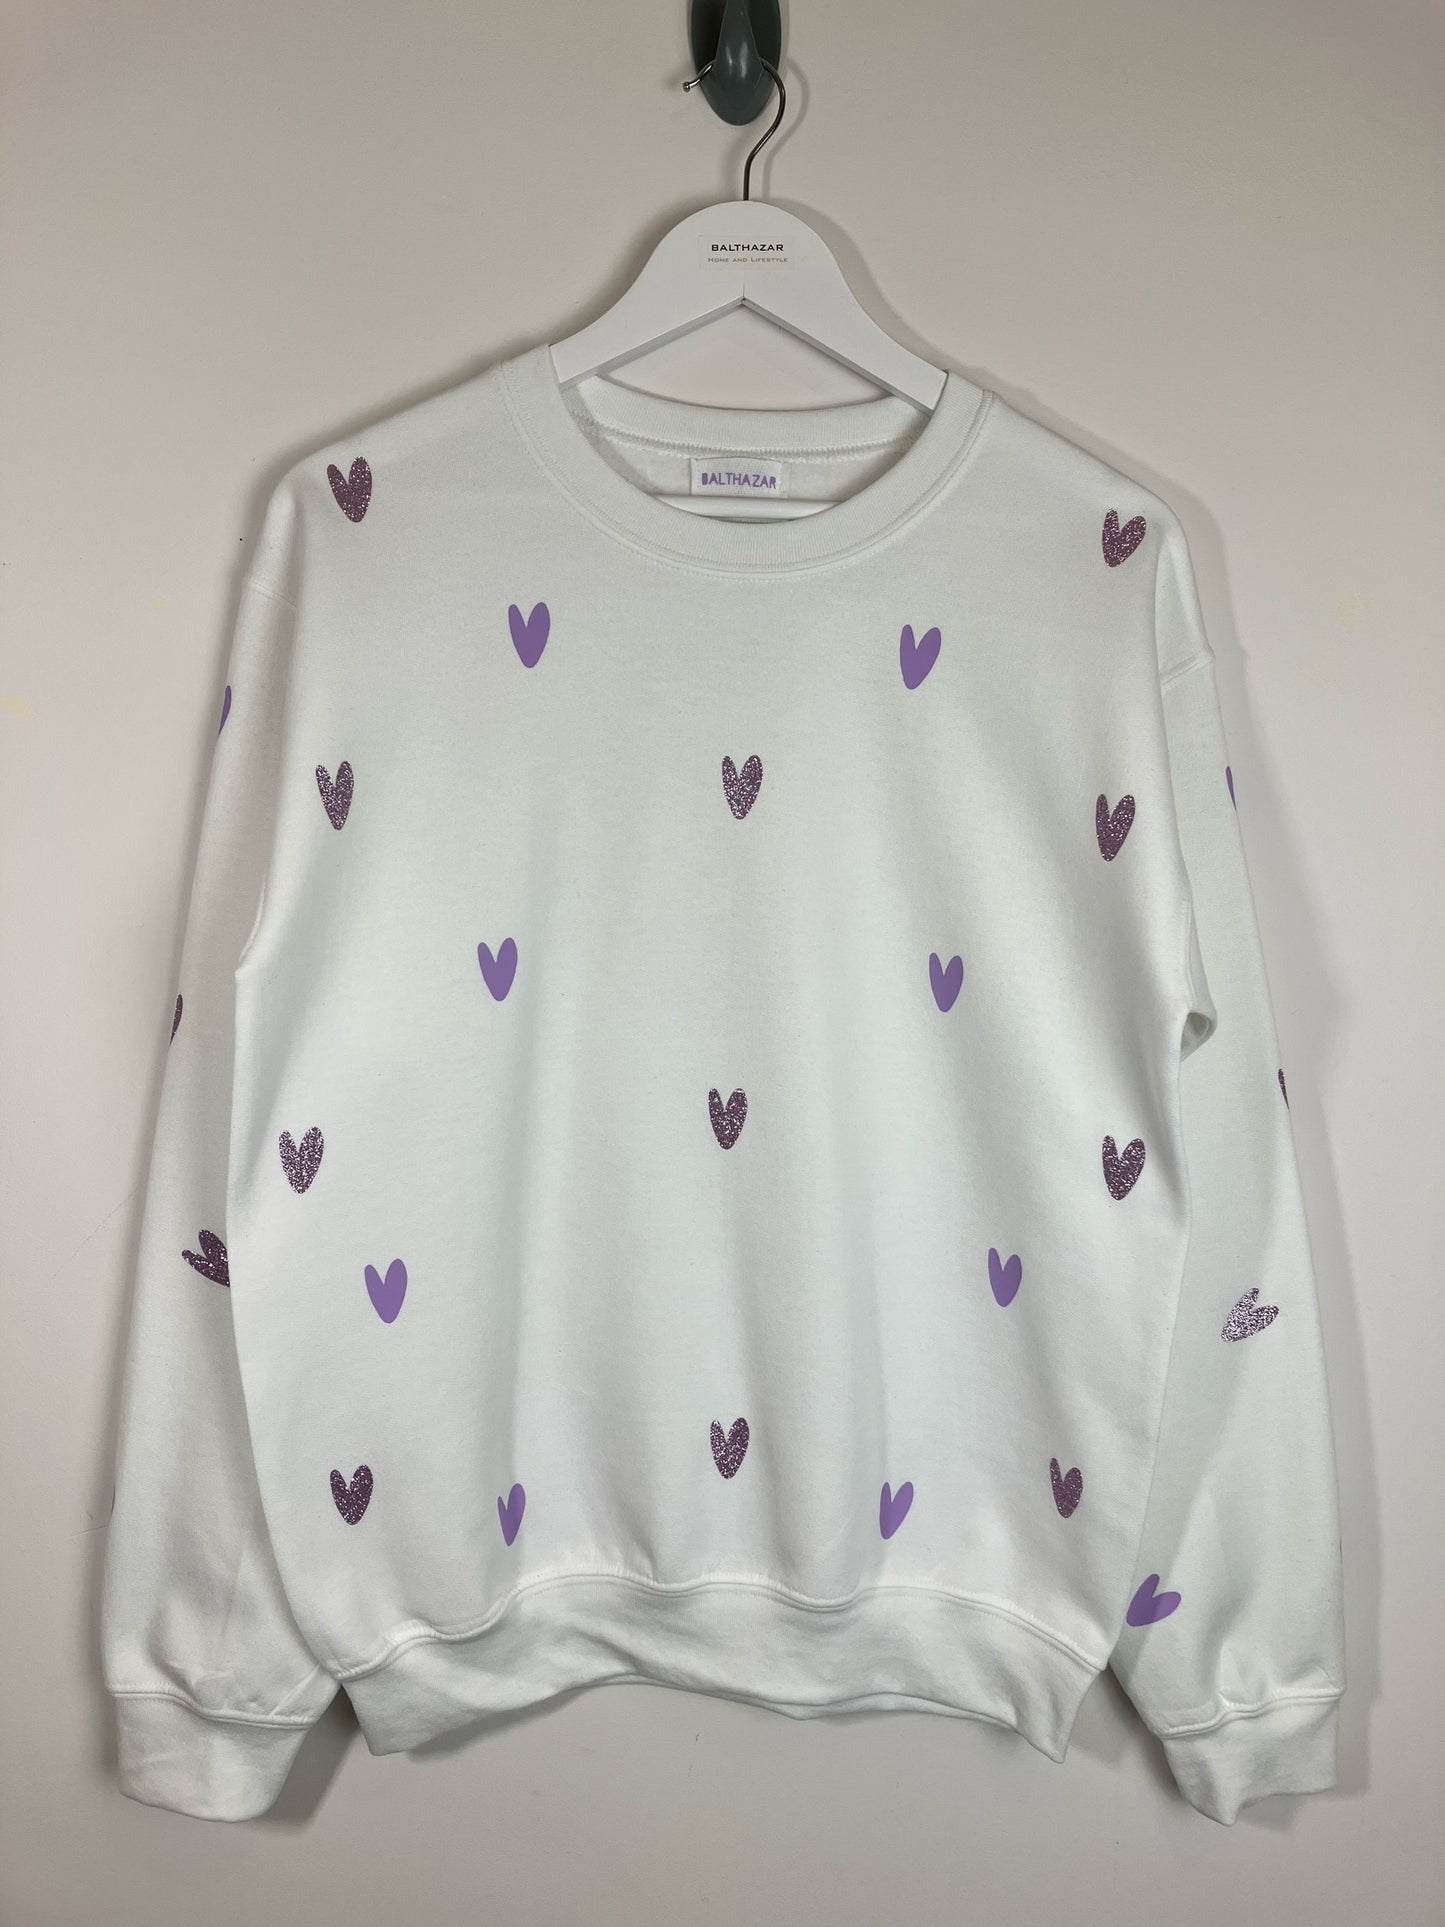 Miniature abstract heart sweatshirt - customisable